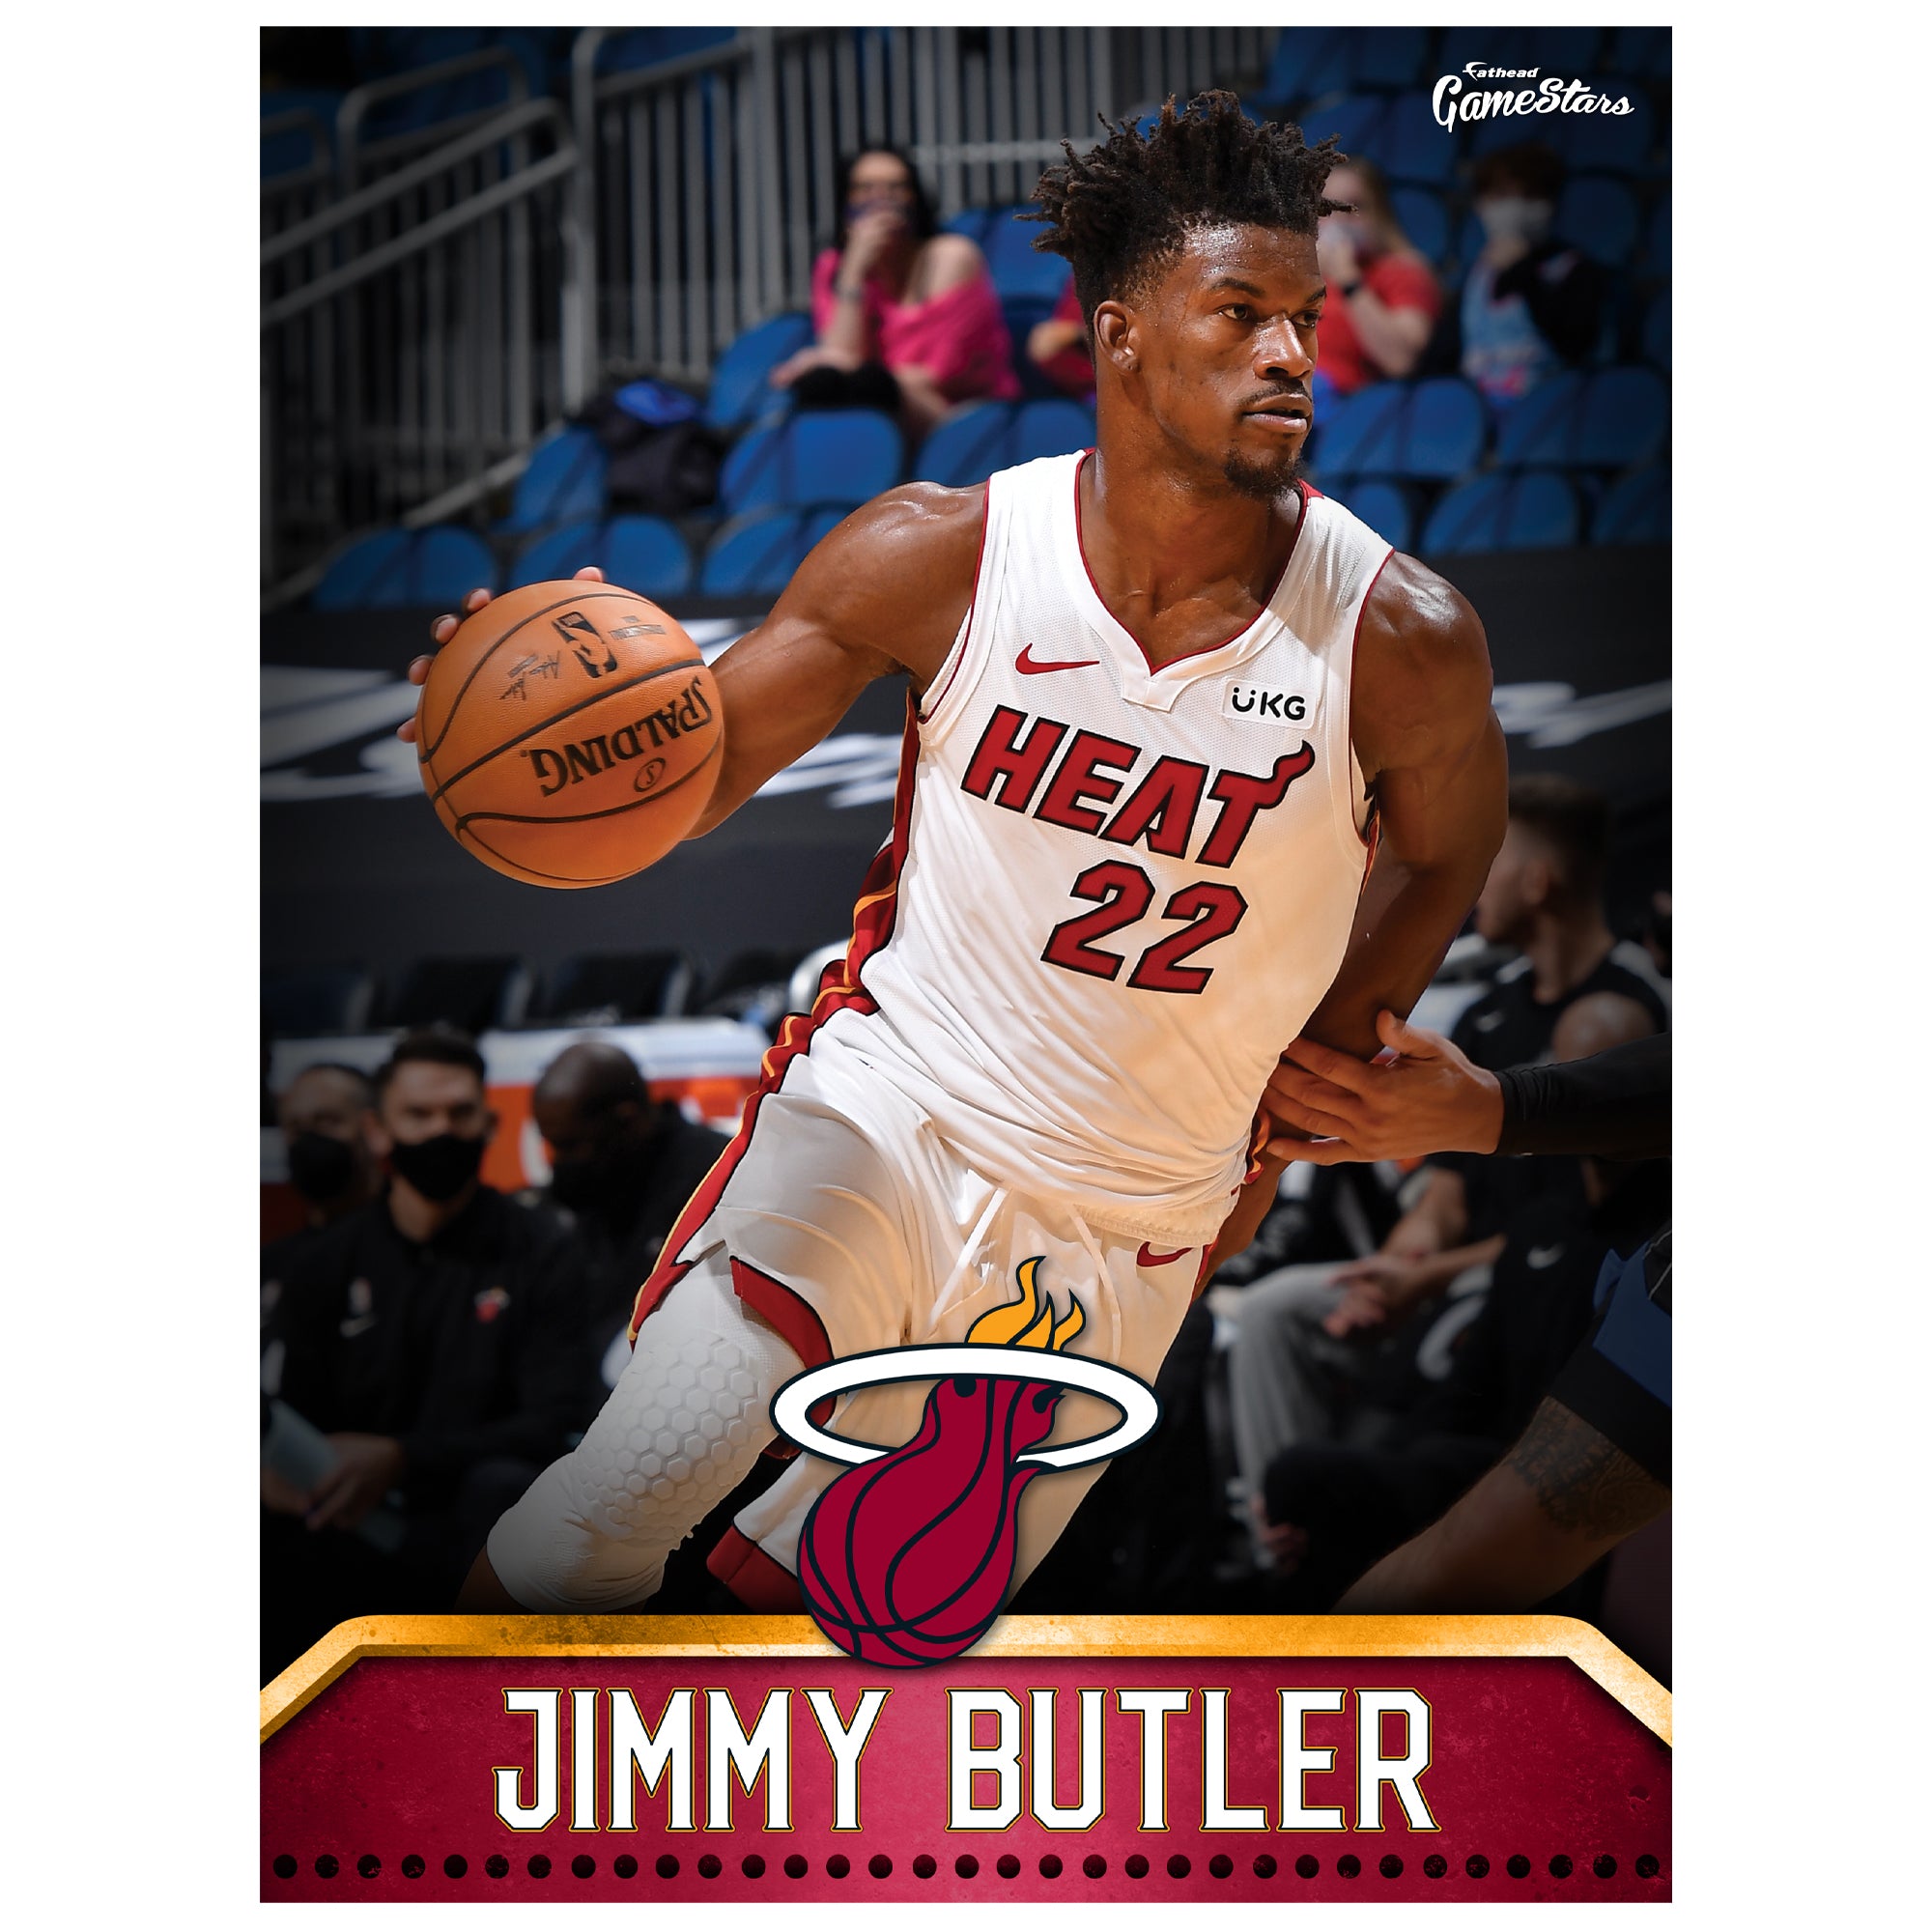 Jimmy Butler Wallpaper  Sports graphics, Concept art, Basketball